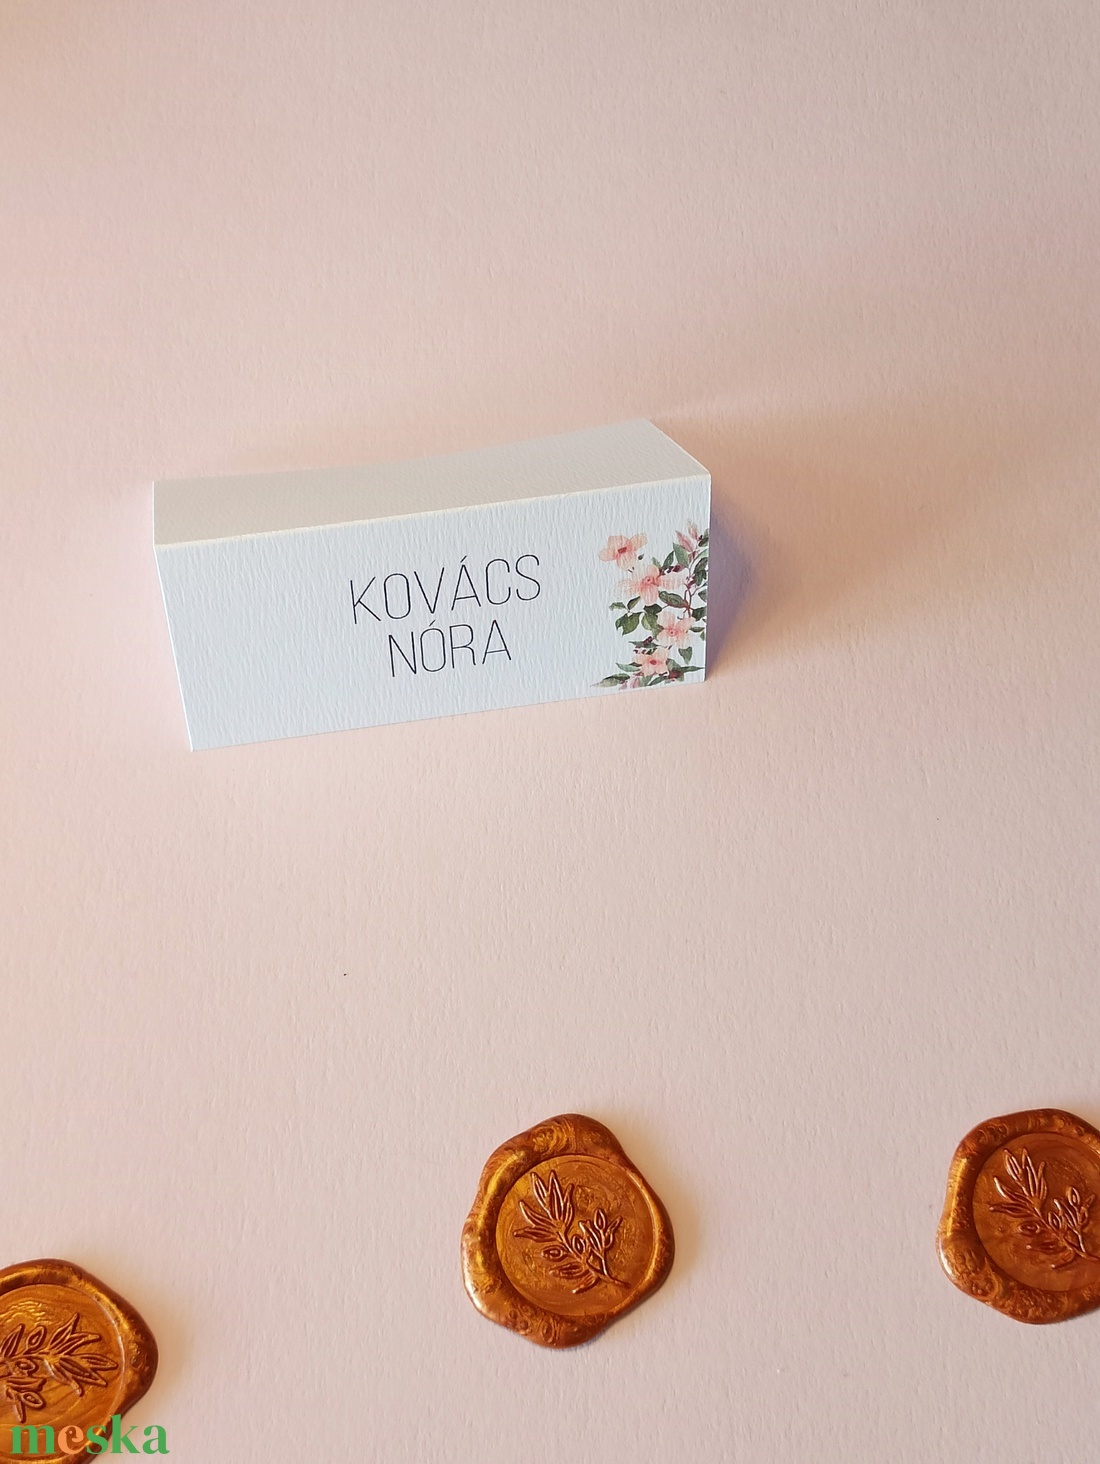 Virágos ültetőkártya esküvőre, születésnapra, partyra - esküvő - meghívó & kártya - ültetési rend - Meska.hu